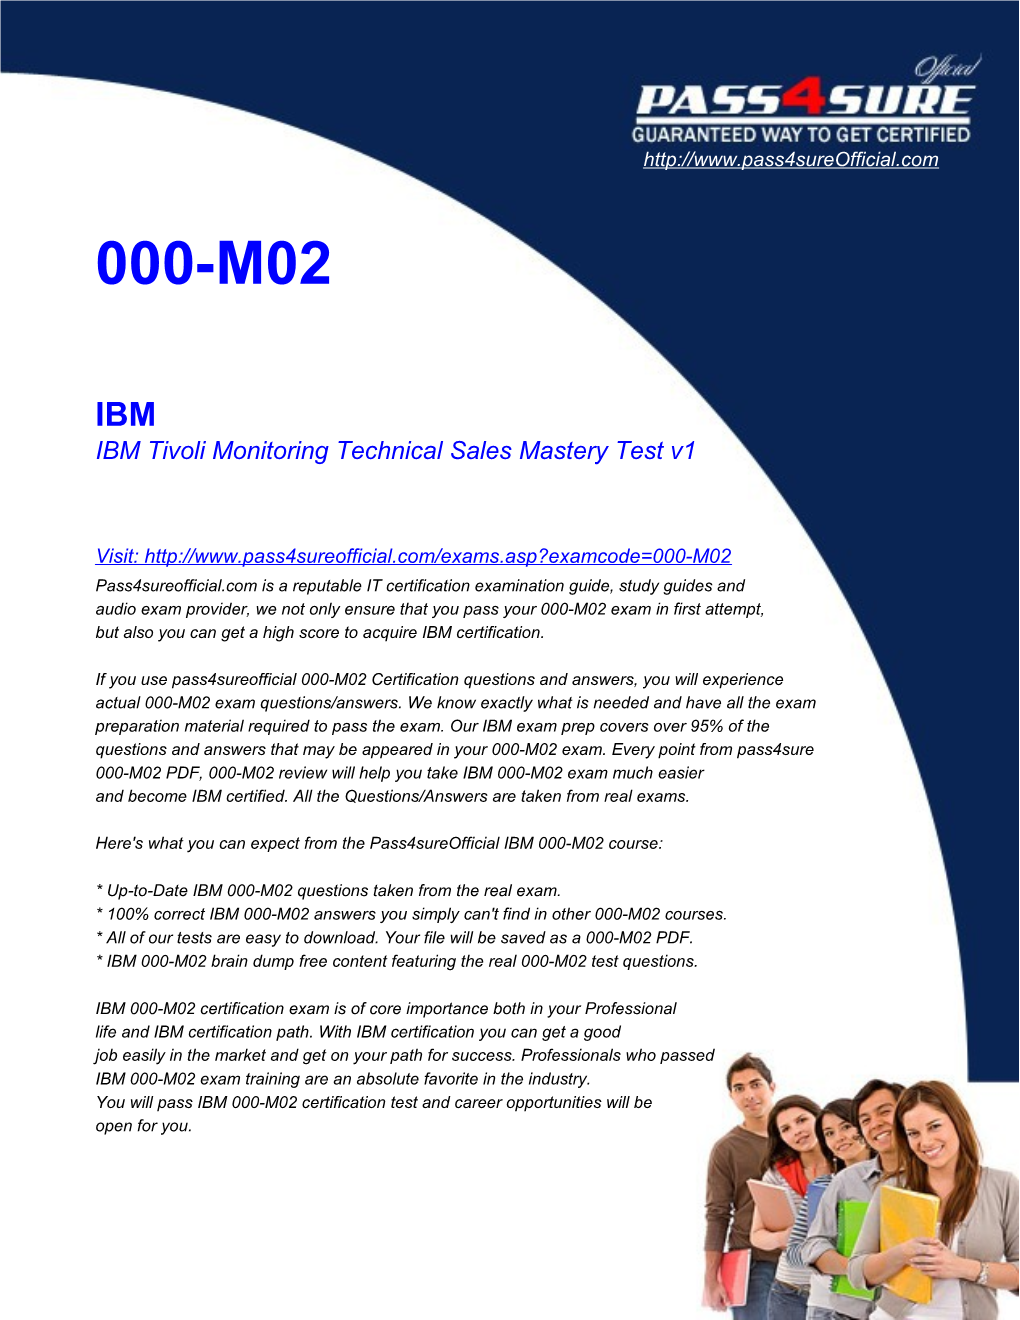 IBM Tivoli Monitoring Technical Sales Mastery Test V1